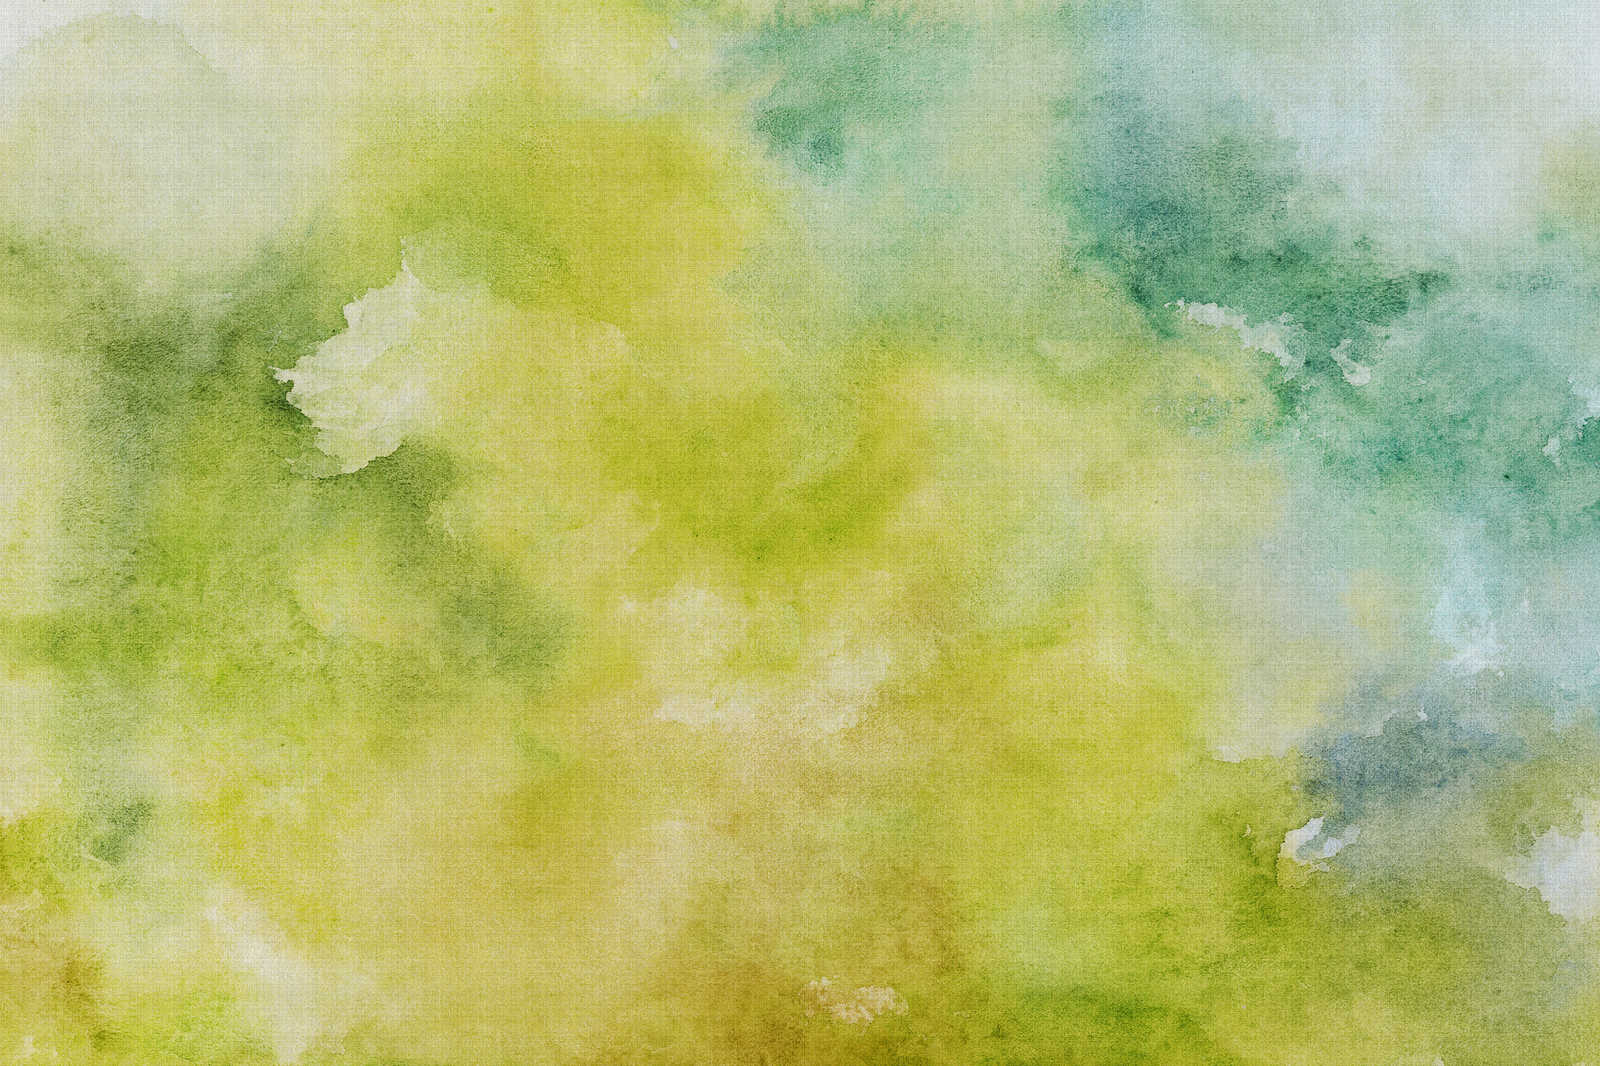             Watercolours 3 - Motif vert aquarelle sur toile aspect lin naturel - 1,20 m x 0,80 m
        